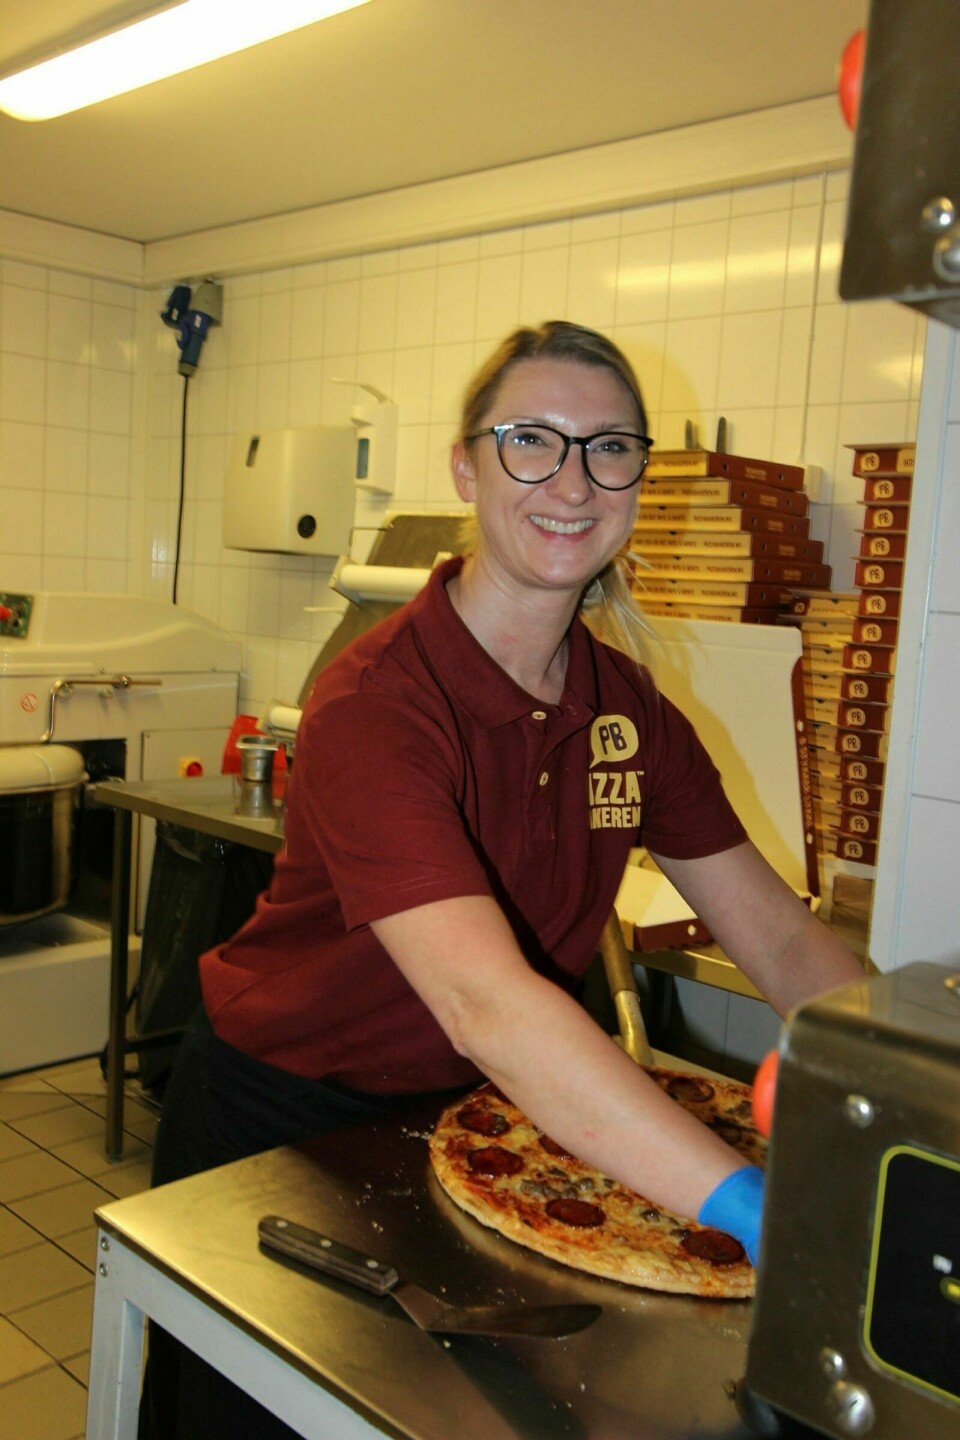 KLAR MED NESTE BESTILLING: Kristina Ilcenkaite er avdelingsleder hos Pizzabakeren. De travleste dagene hos dem er torsdag og søndag, og ellers består kundene for en stor del av soldater. Det meste de selger er som take-away. Foto: Vera Lill Bjørkhaug